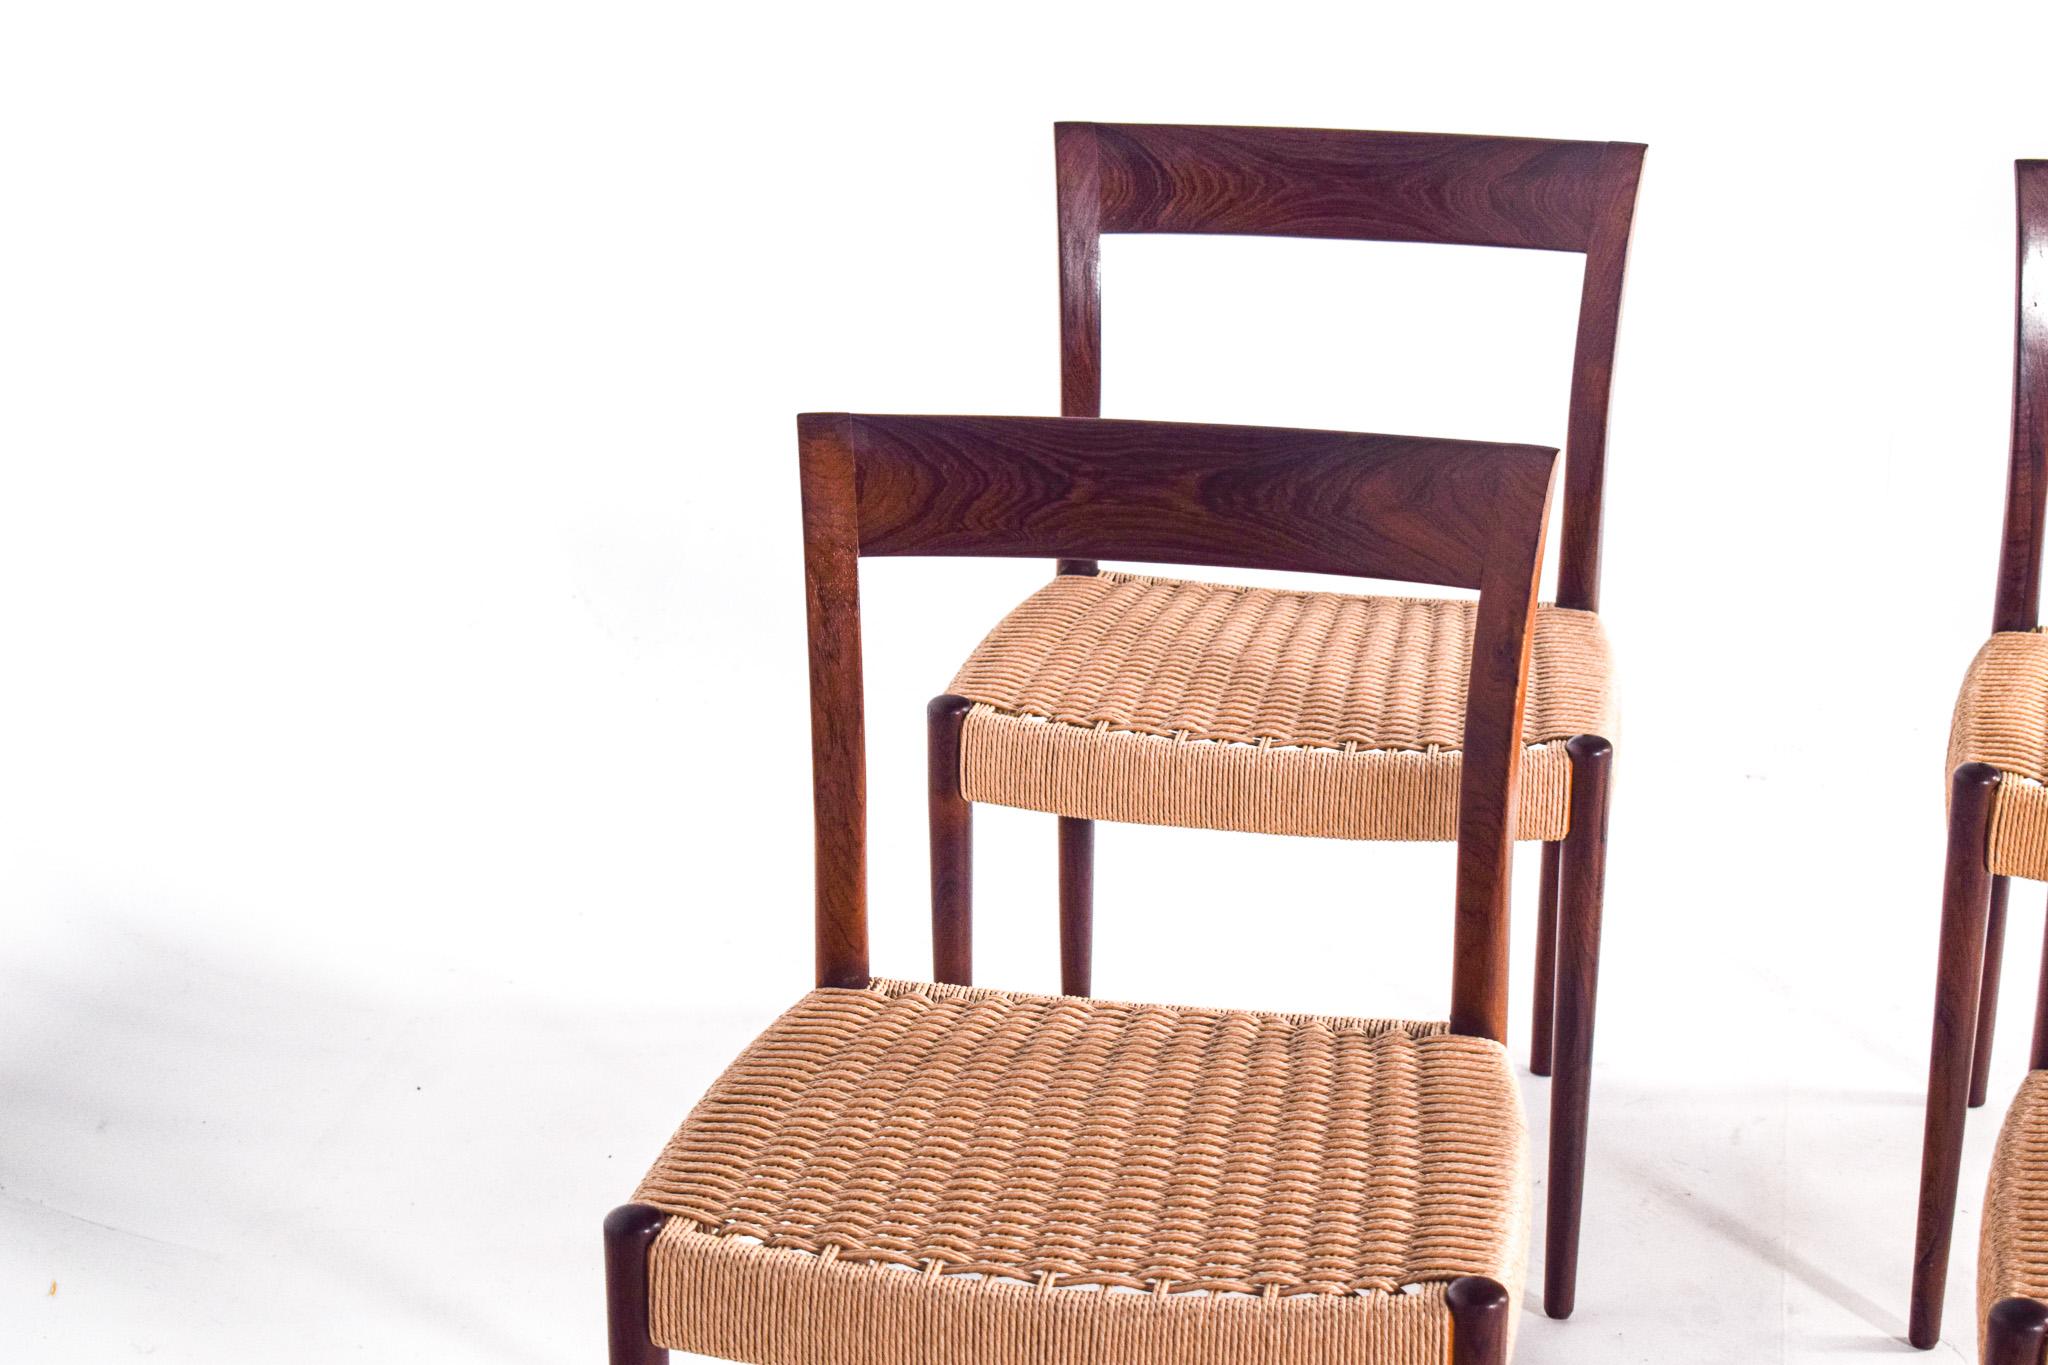 Cet ensemble de six chaises de salle à manger des années 1960, conçu par Søren Willadsen, témoigne de la finesse de l'artisanat danois et de l'éthique du design du milieu du XXe siècle. La construction en bois de rose confère une sensation de